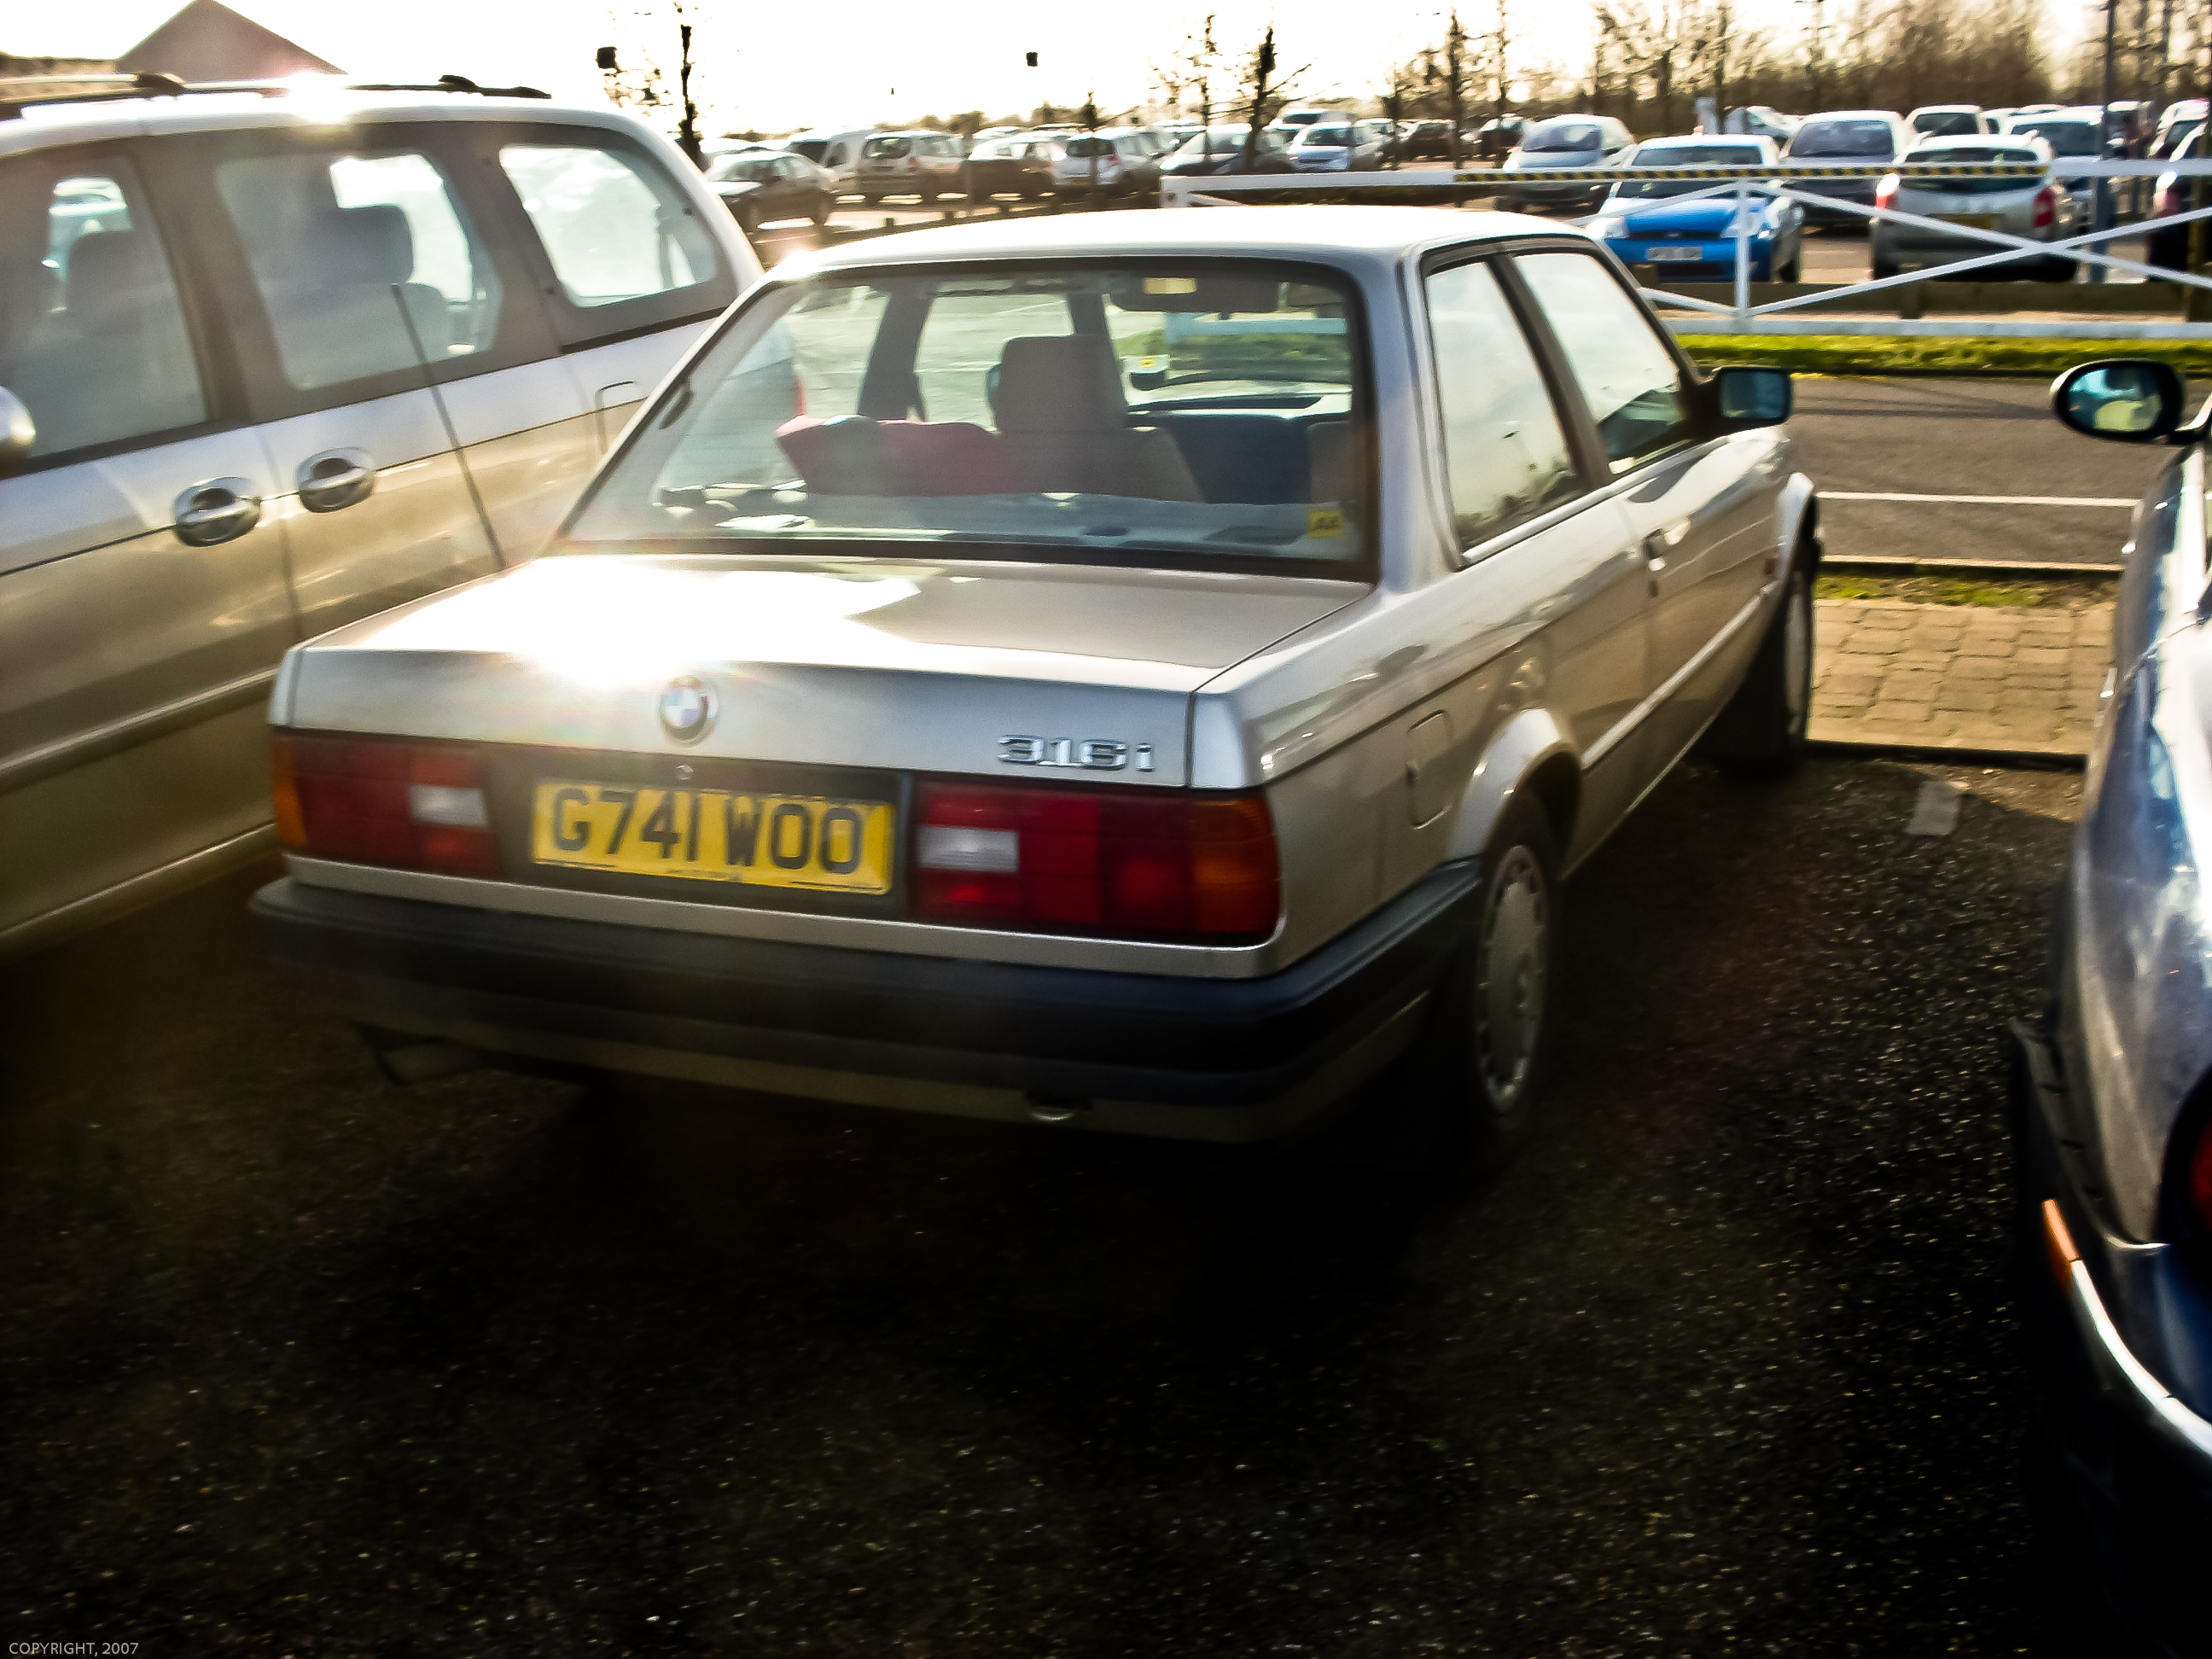 1989 BMW 316i Auto (E30) | Flickr - Photo Sharing!